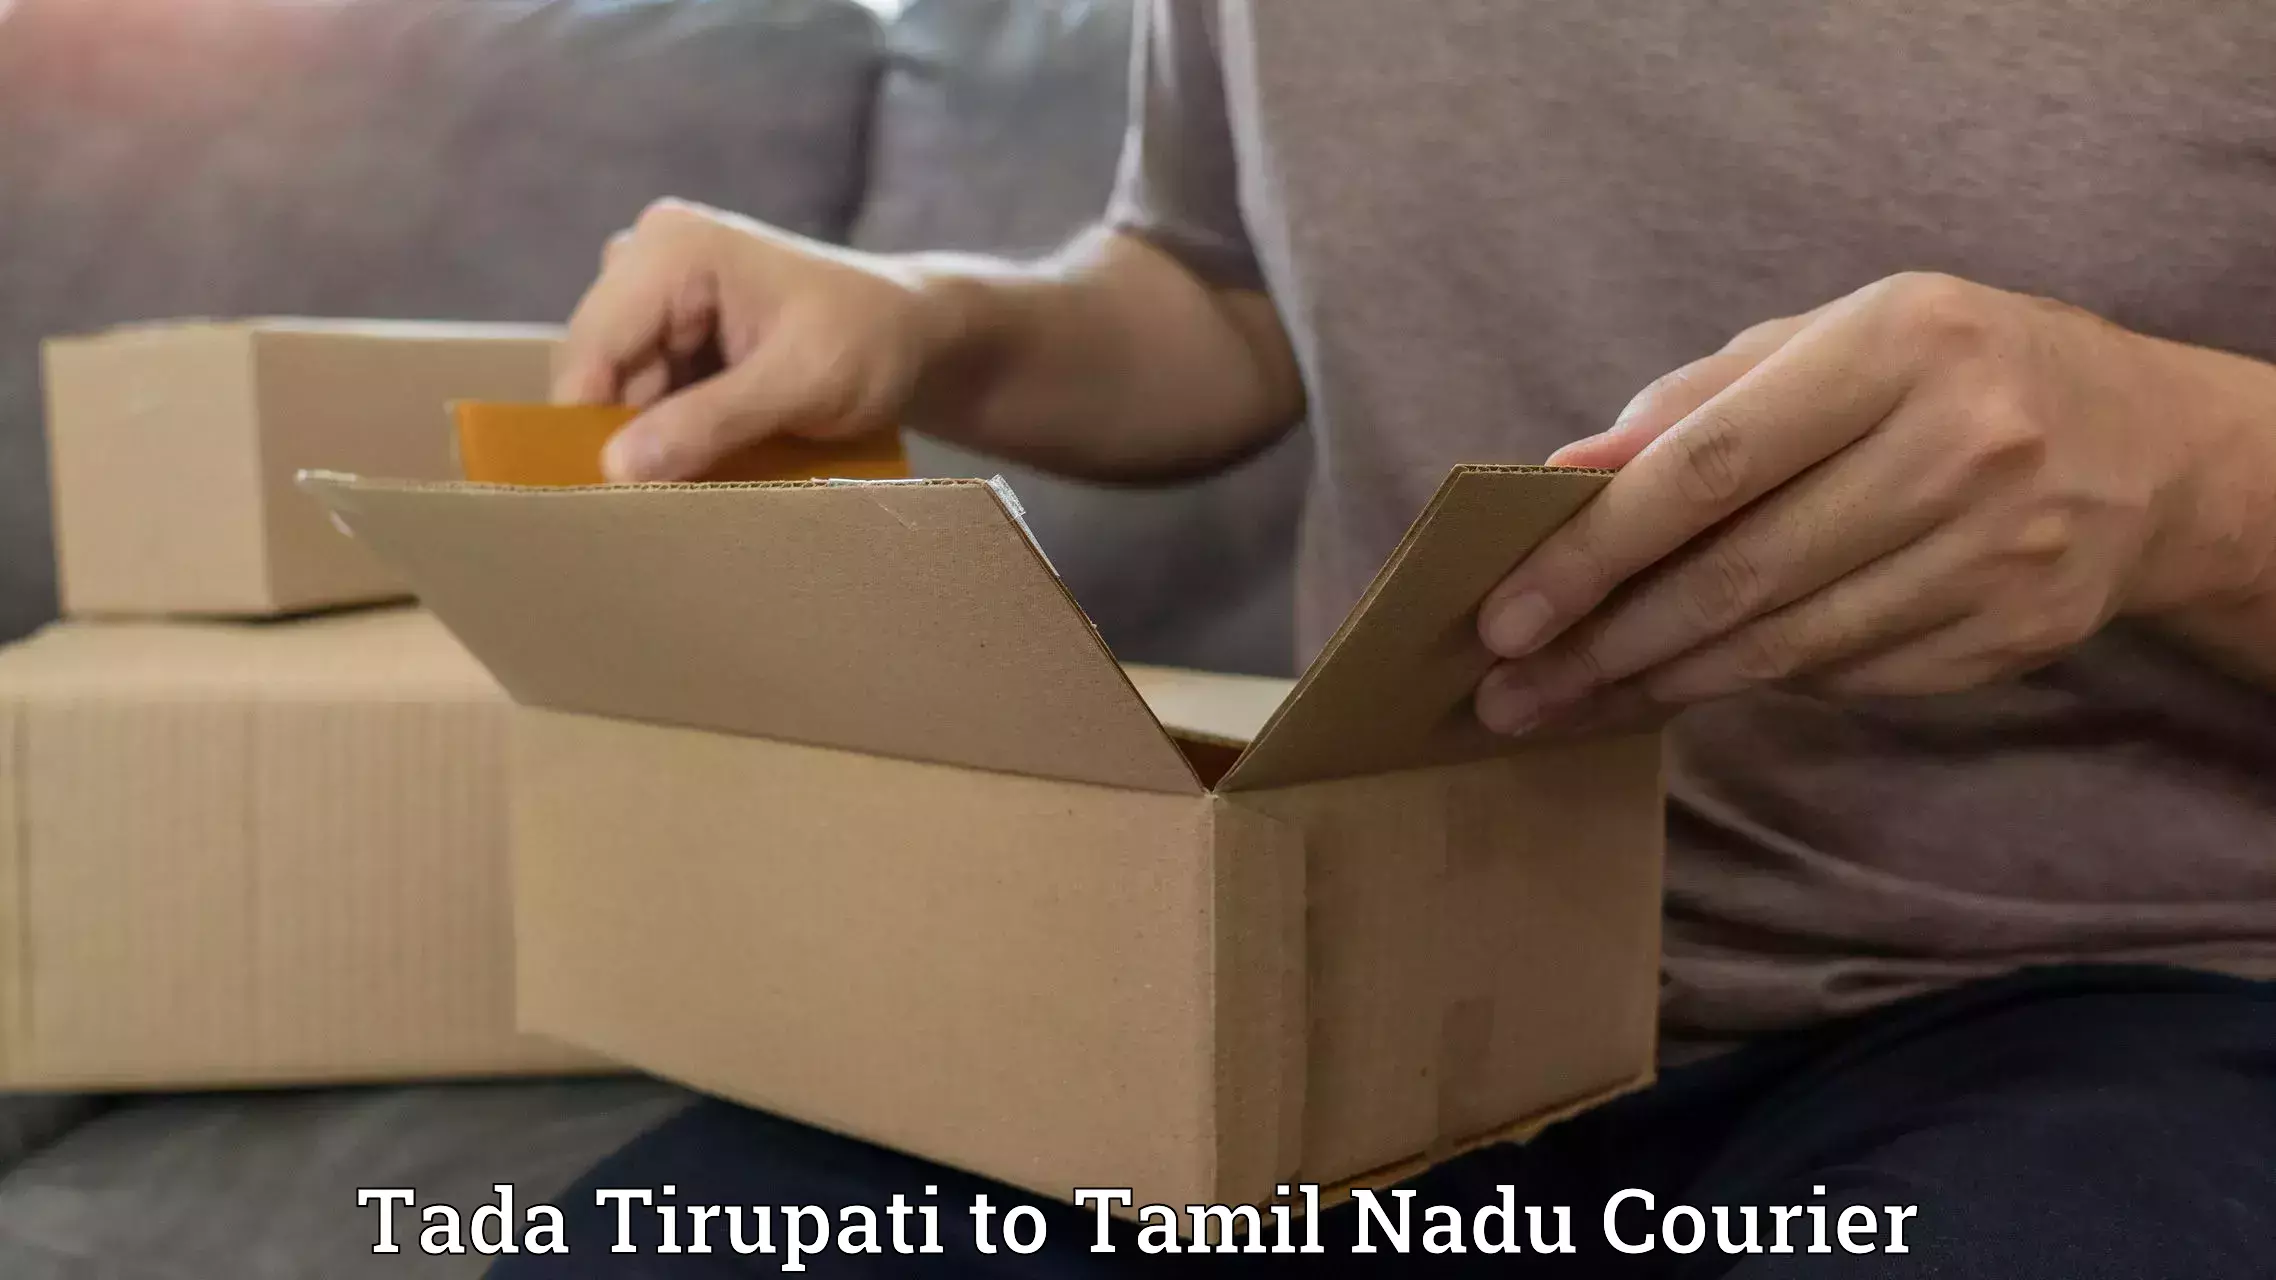 Global freight services Tada Tirupati to Perundurai